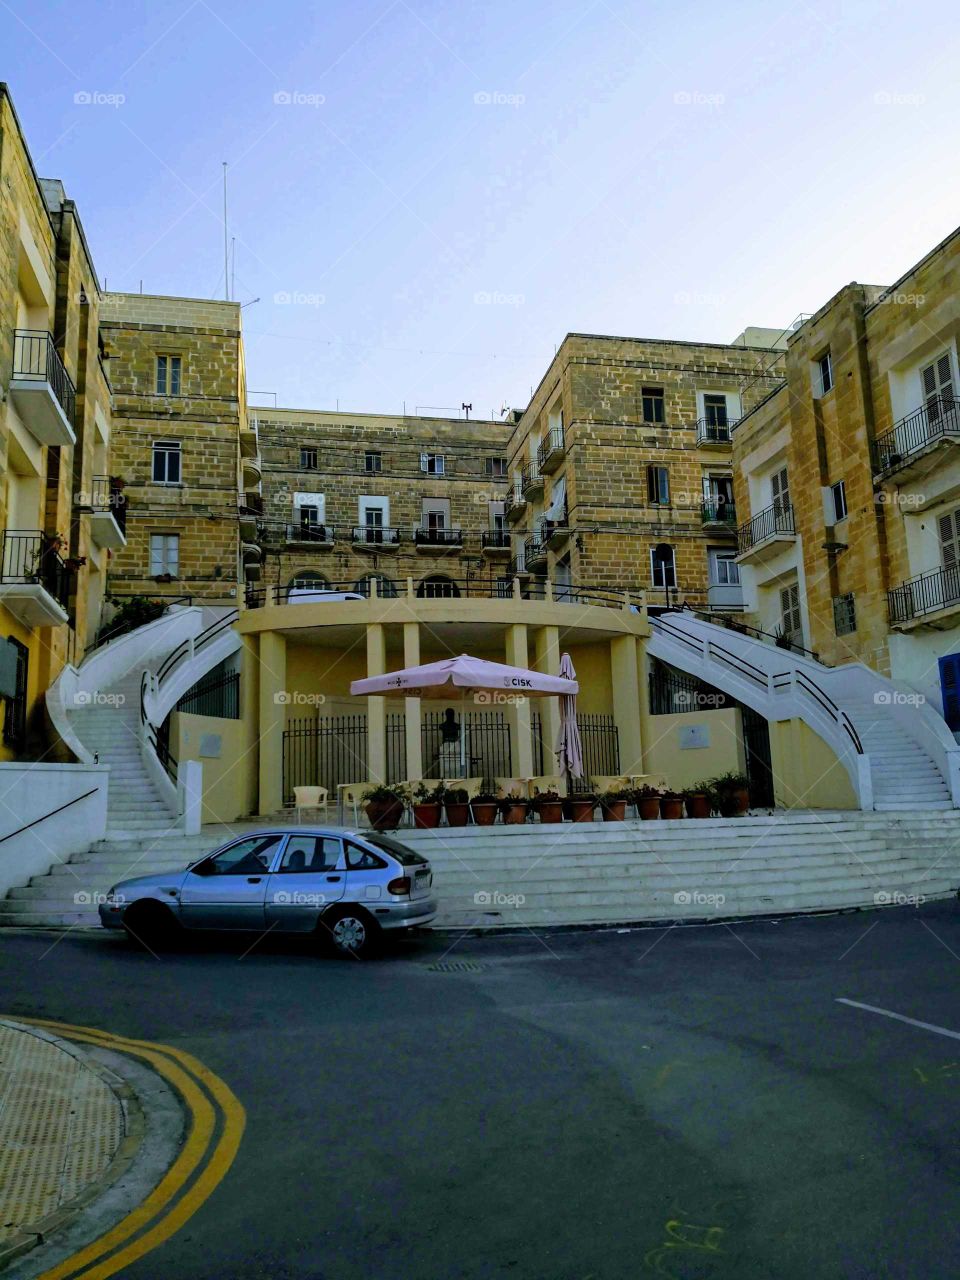 Senglea, Malta